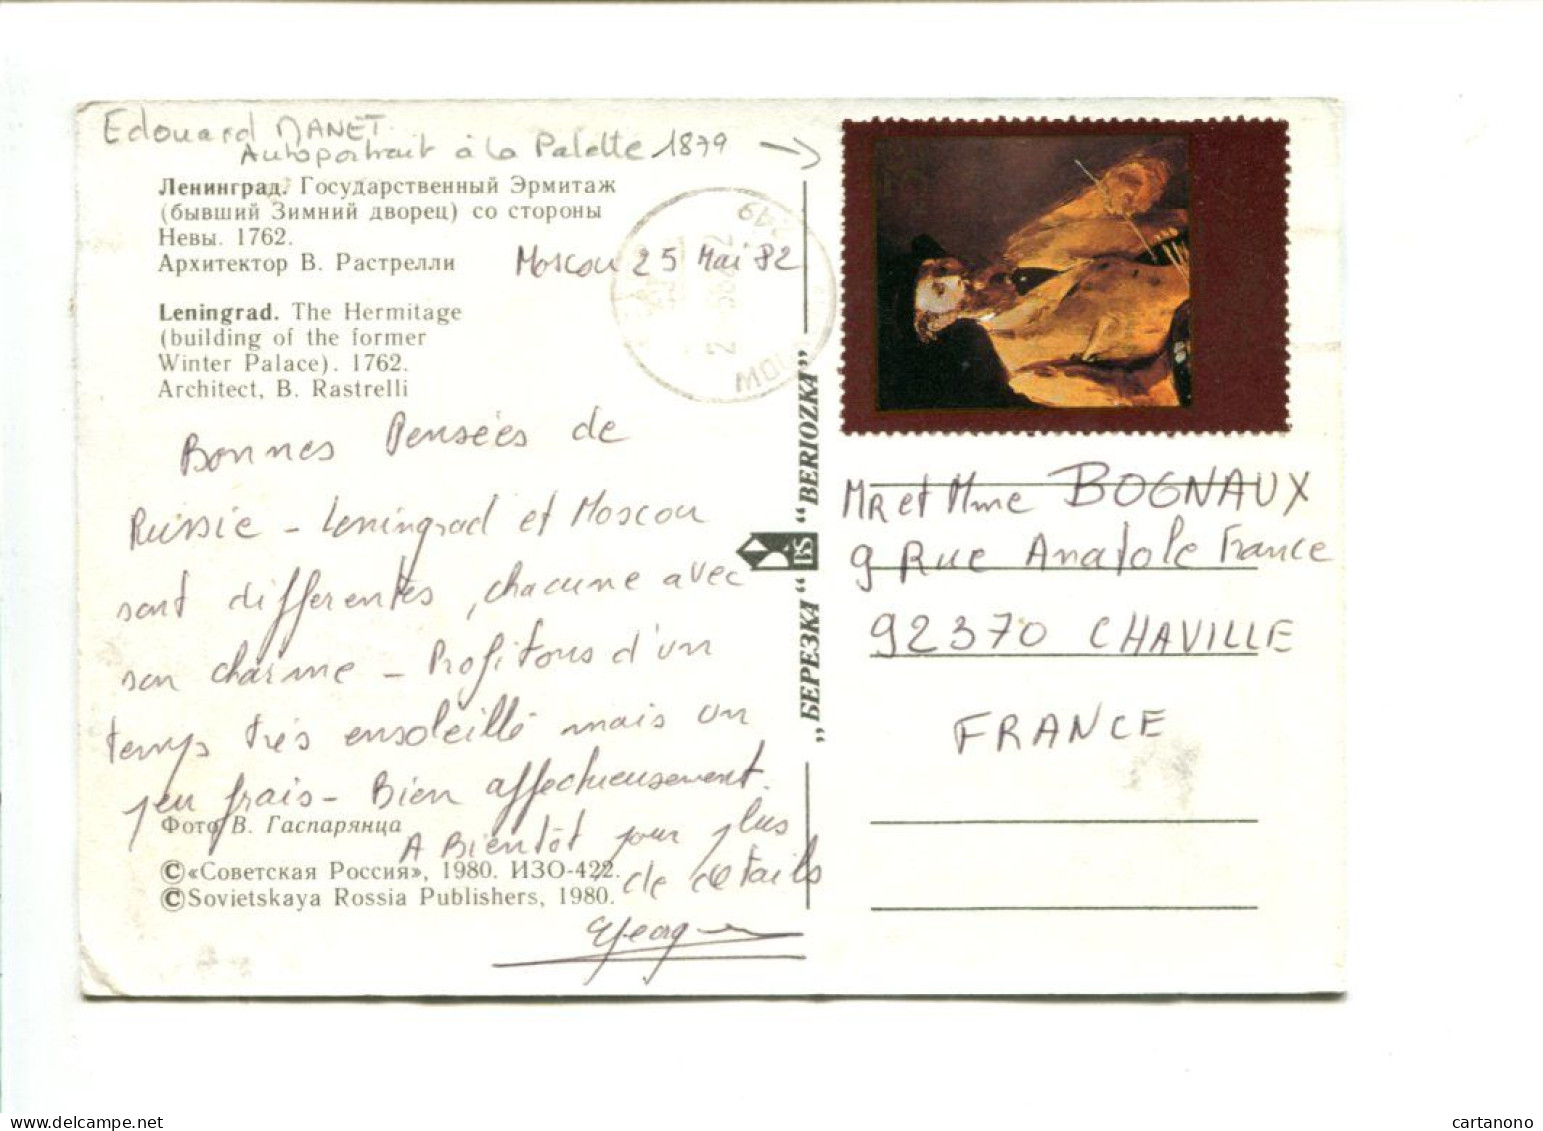 URSS - Affranchissement Sur Carte Postale Du Musée De L'Hermitage - Autoportrait D'Edouard MANET - Impresionismo